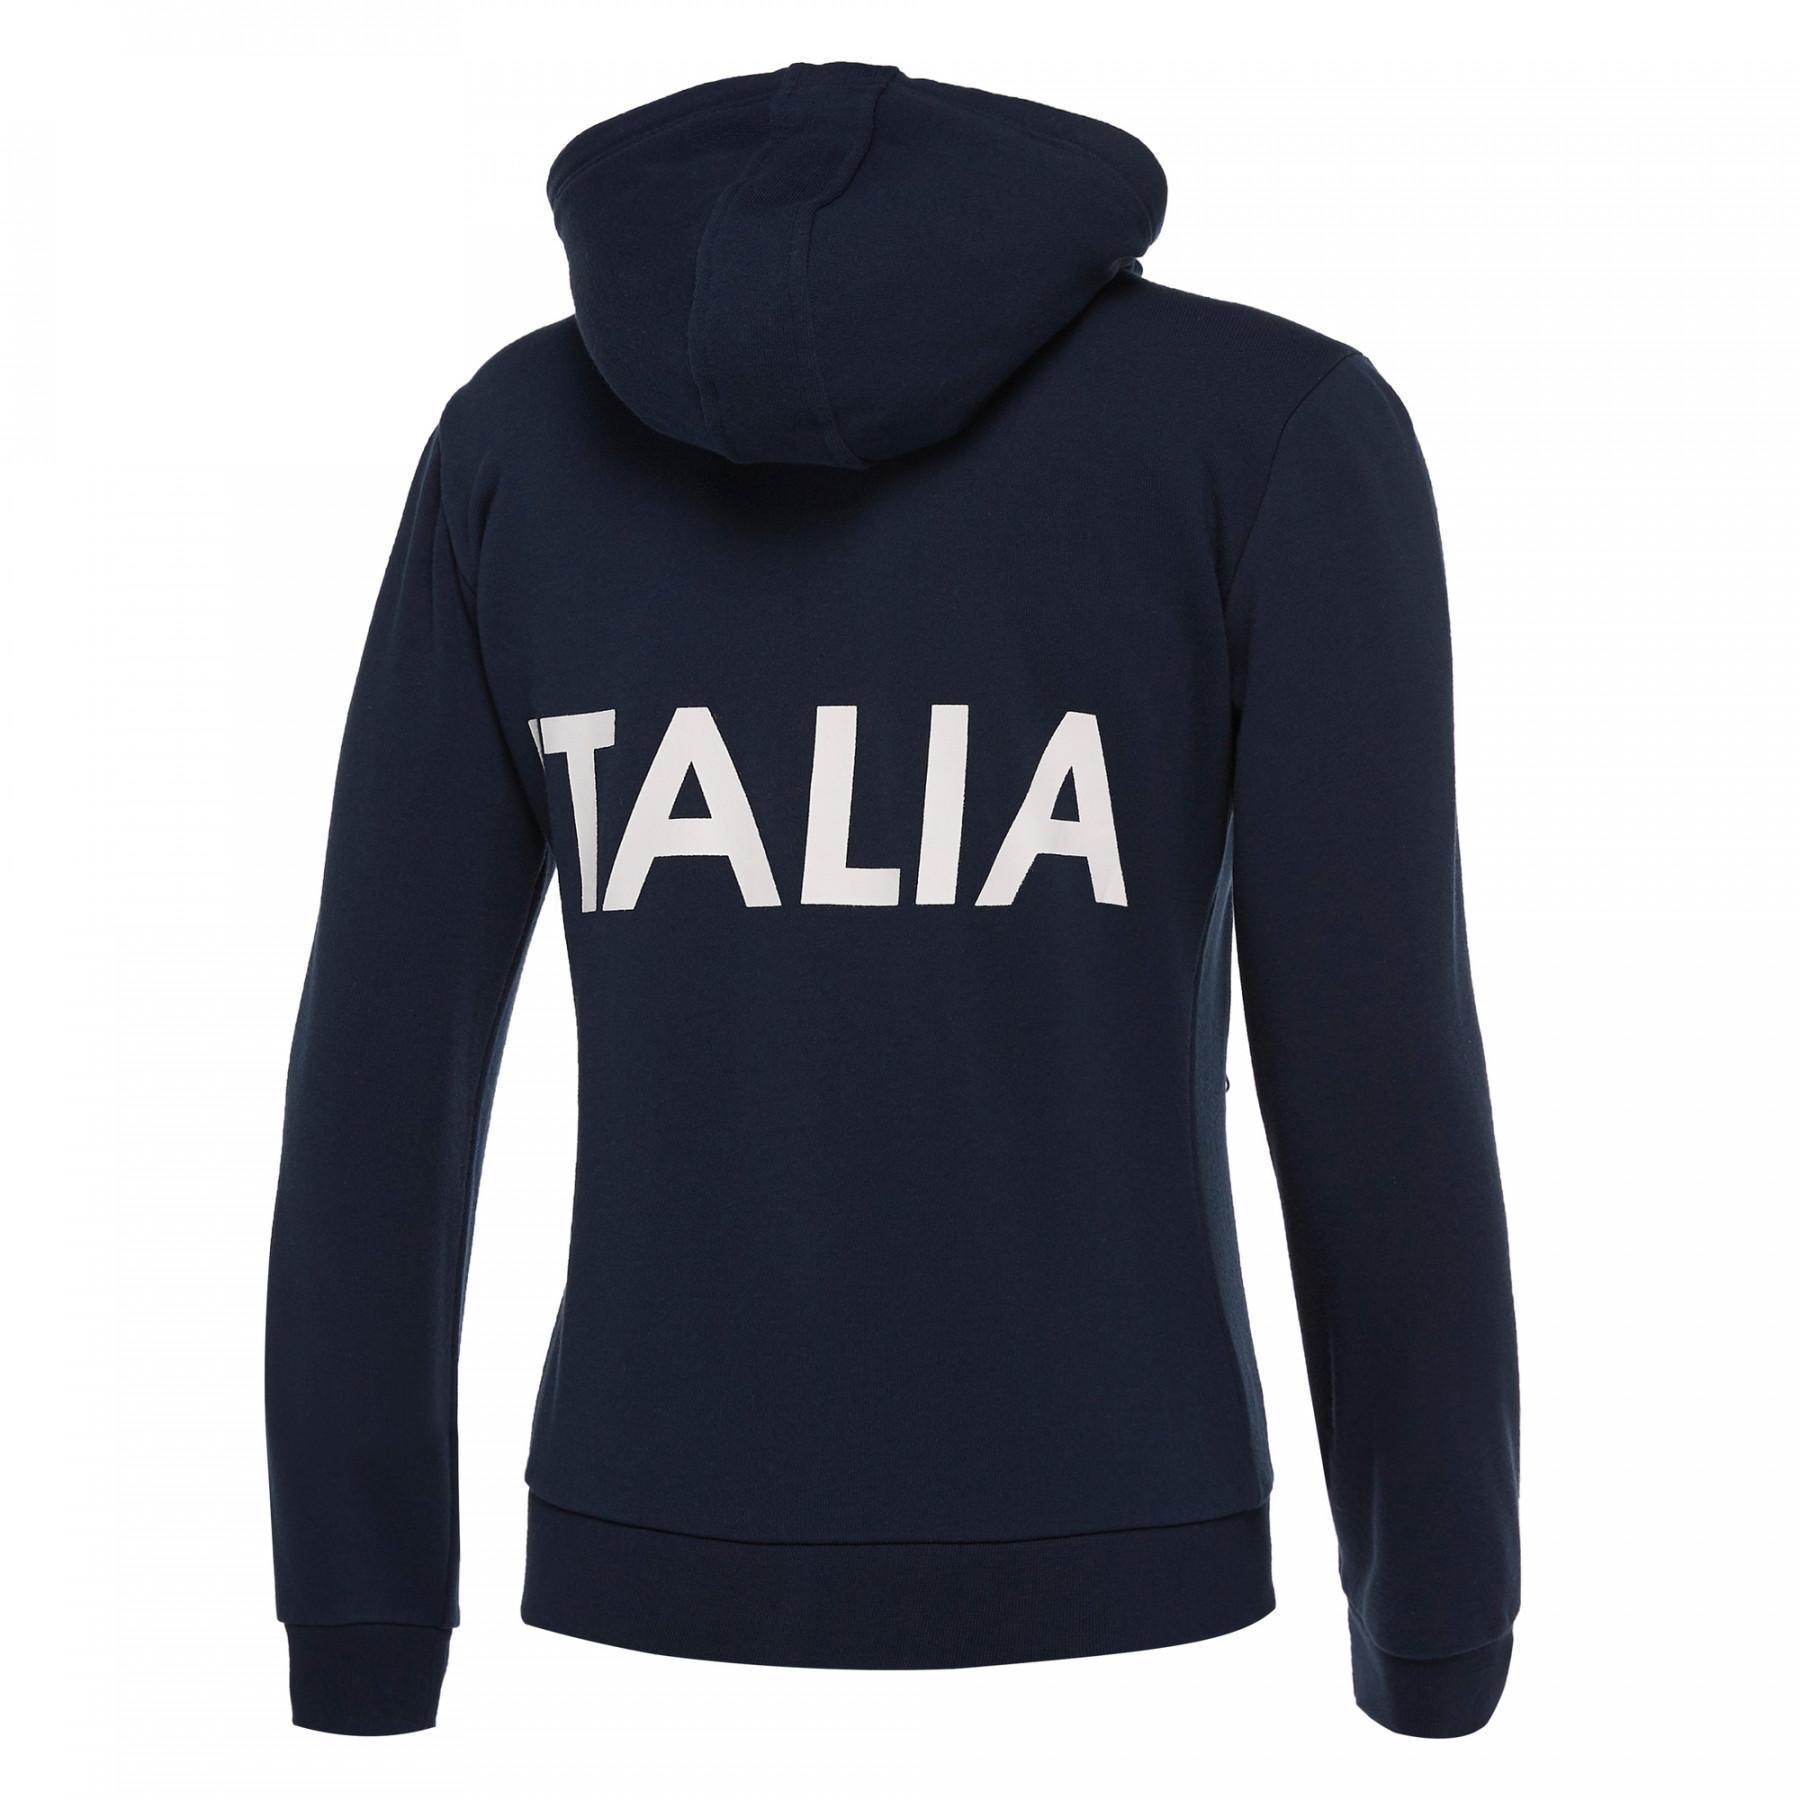 Women's hooded sweatshirt Italie Rugby 2018